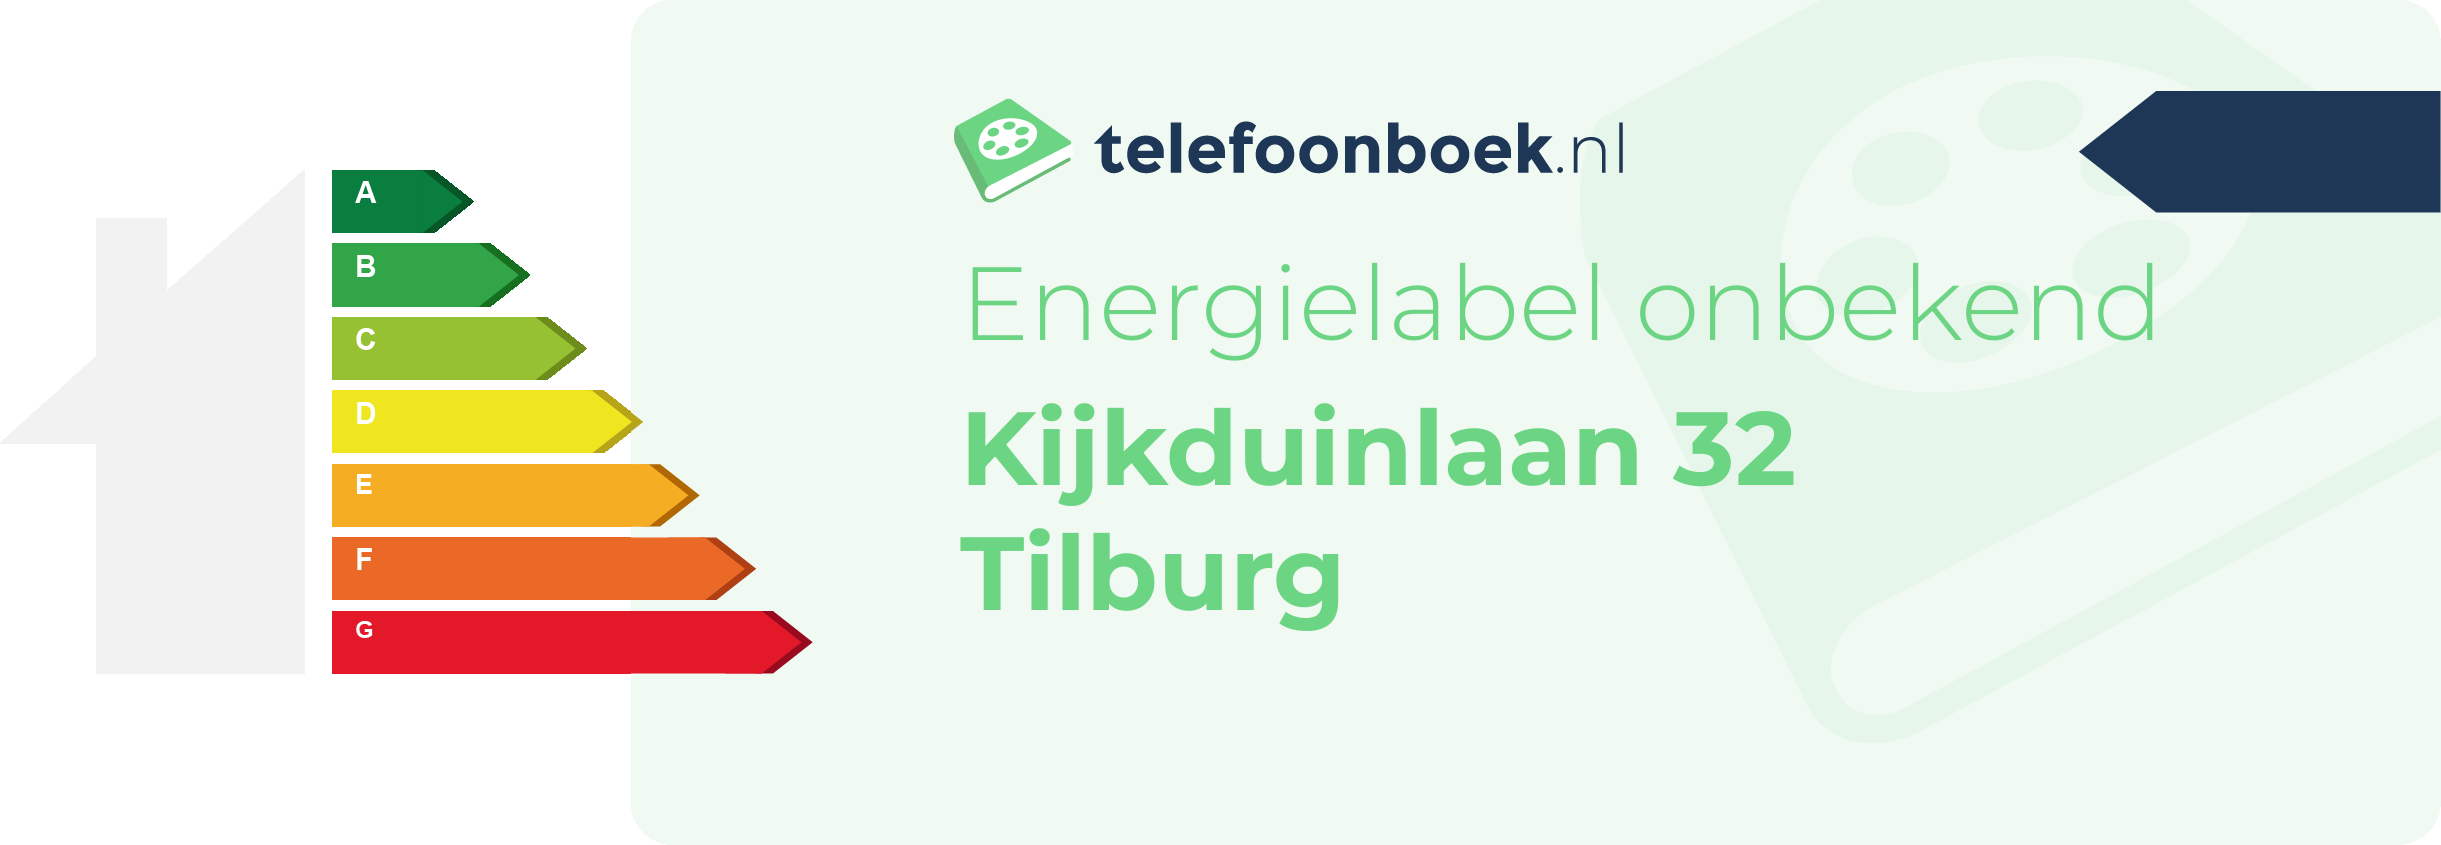 Energielabel Kijkduinlaan 32 Tilburg